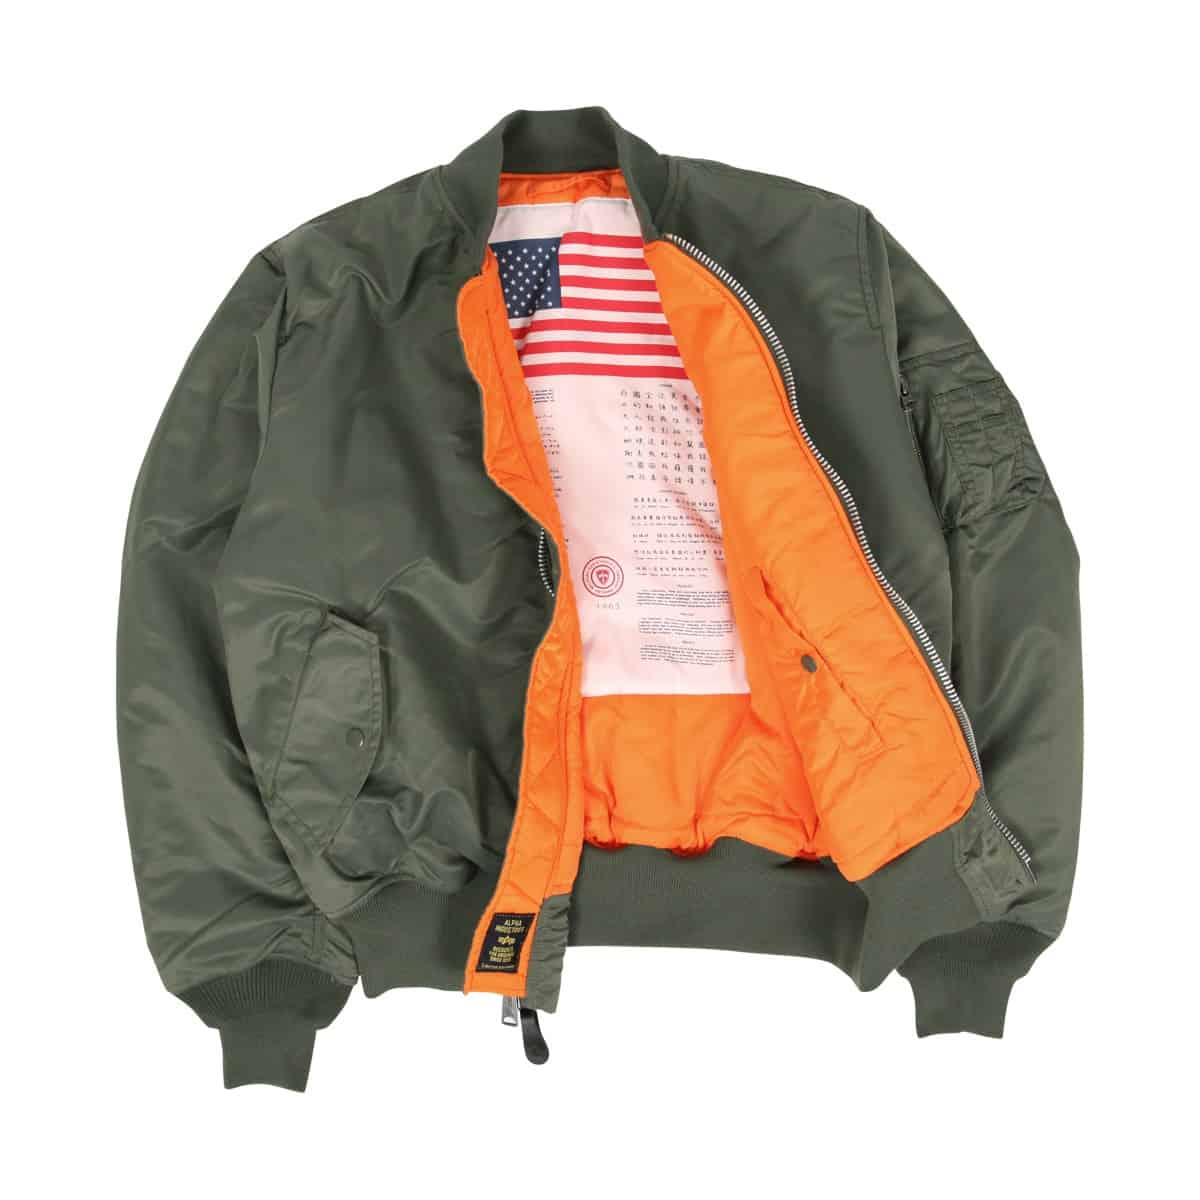 Bomber jacket